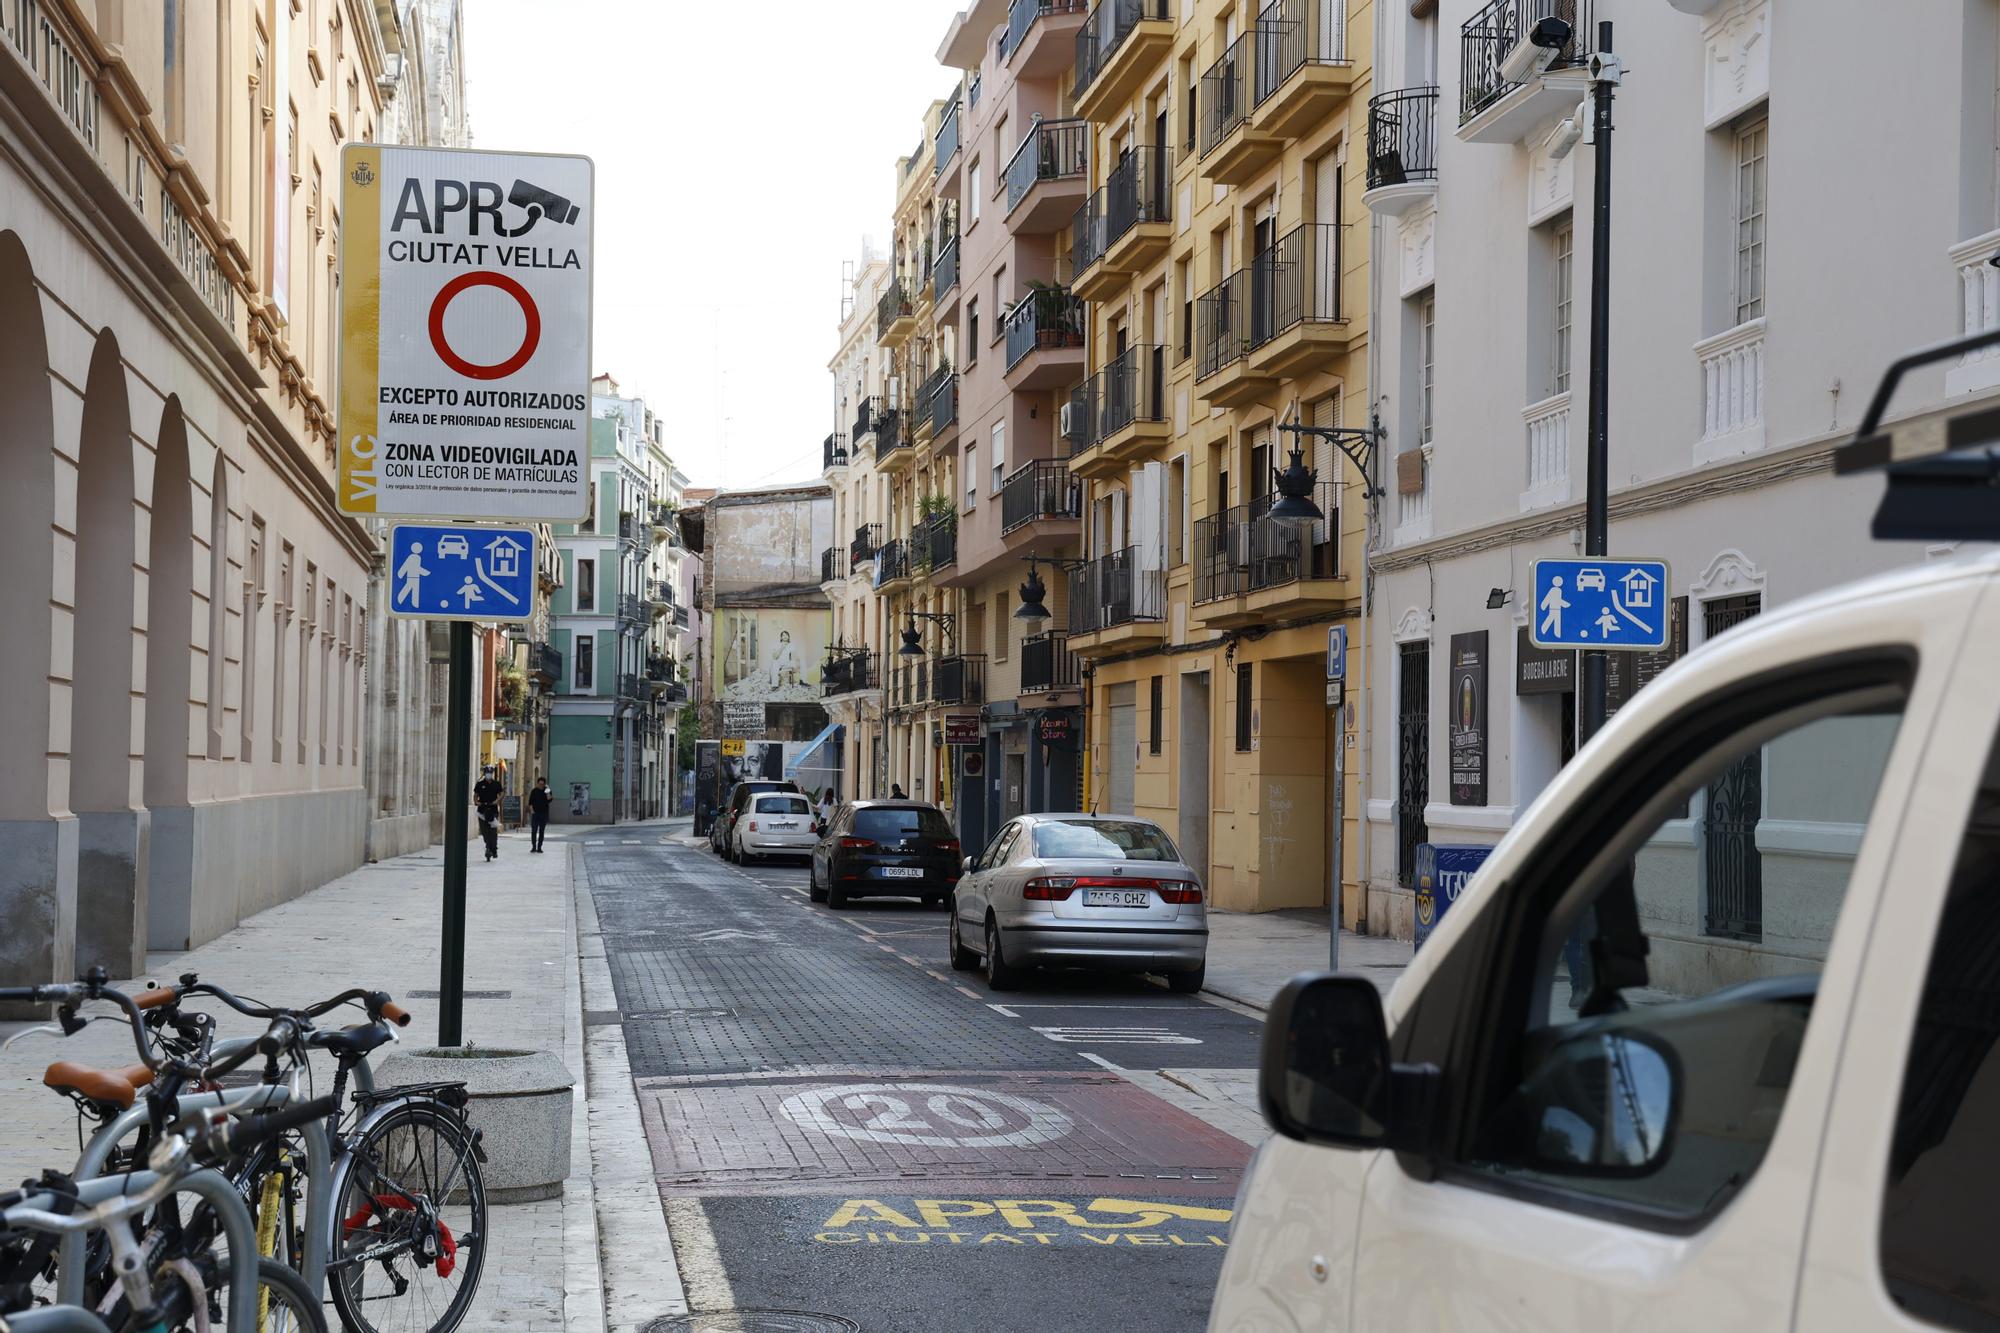 Las cámaras que multarán a los coches en el centro de València